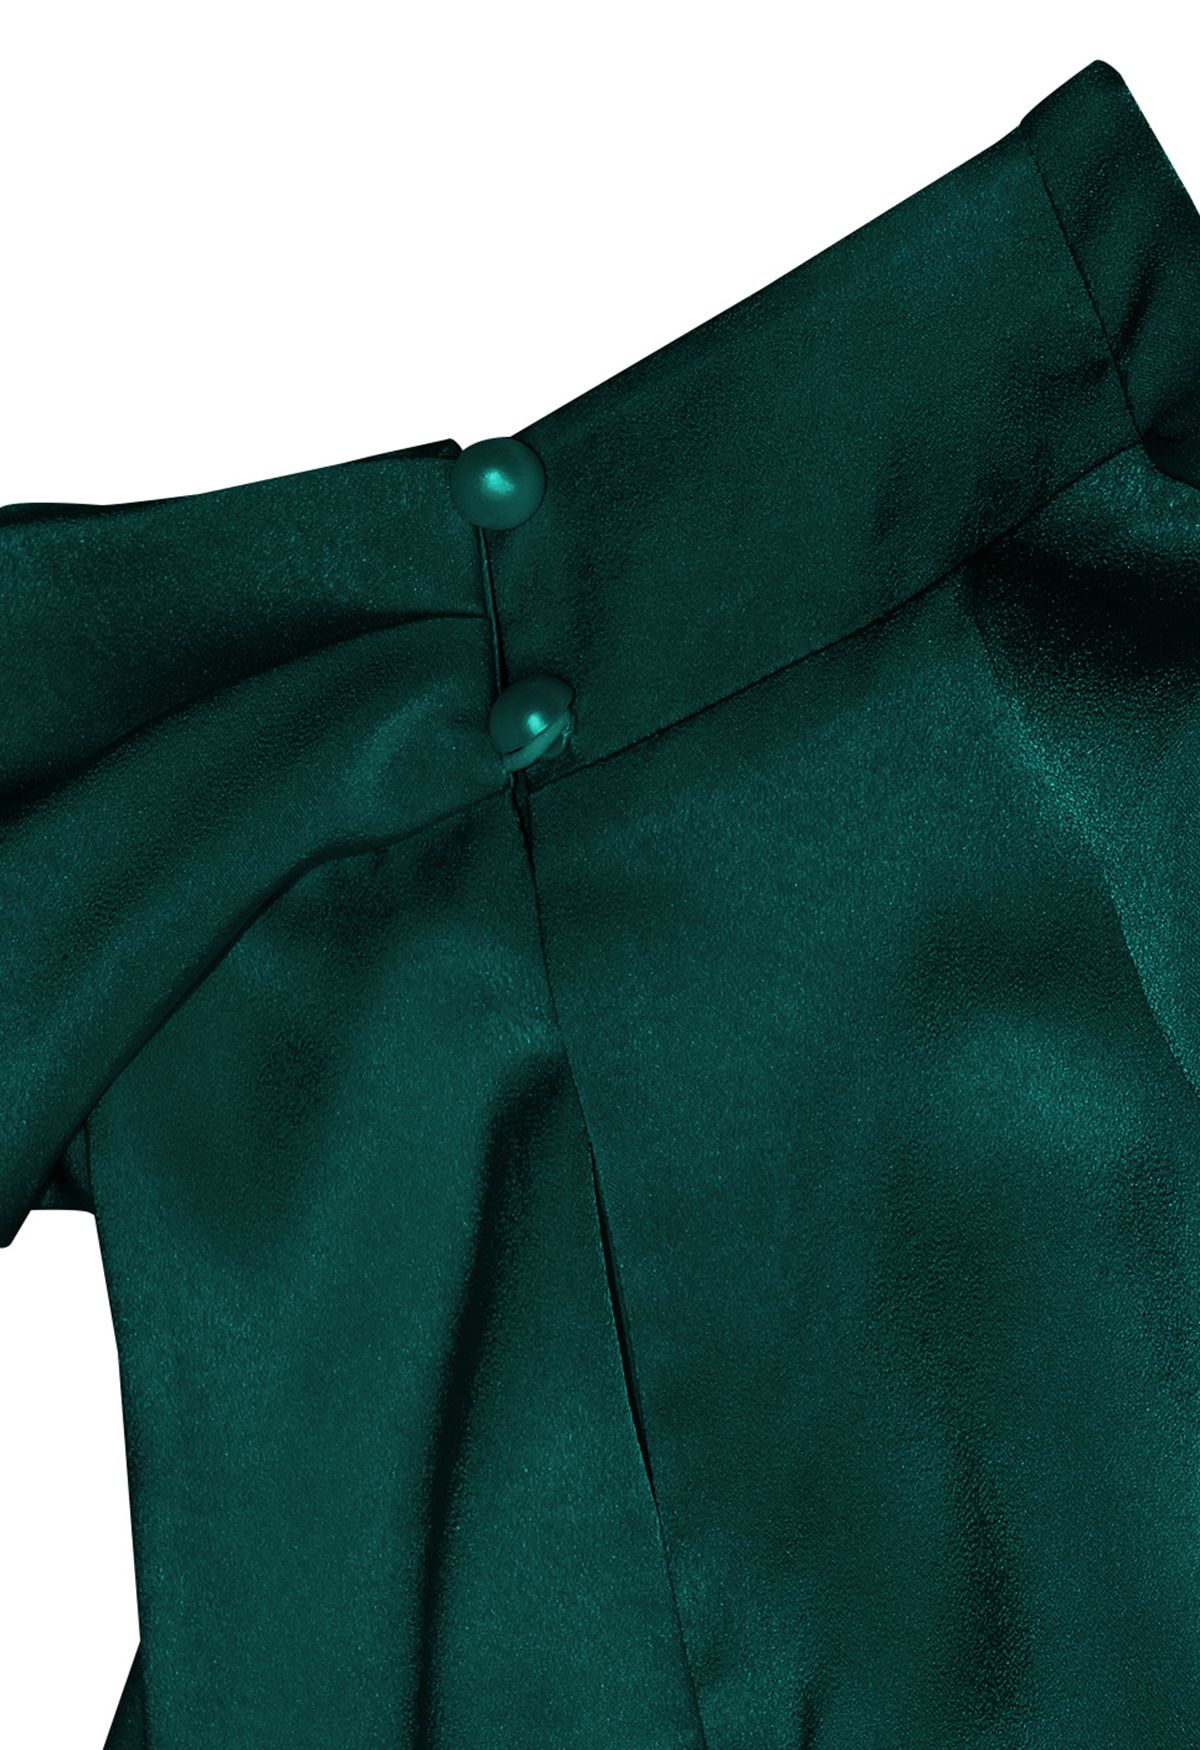 Vestido sin mangas con escote fruncido asimétrico en verde oscuro